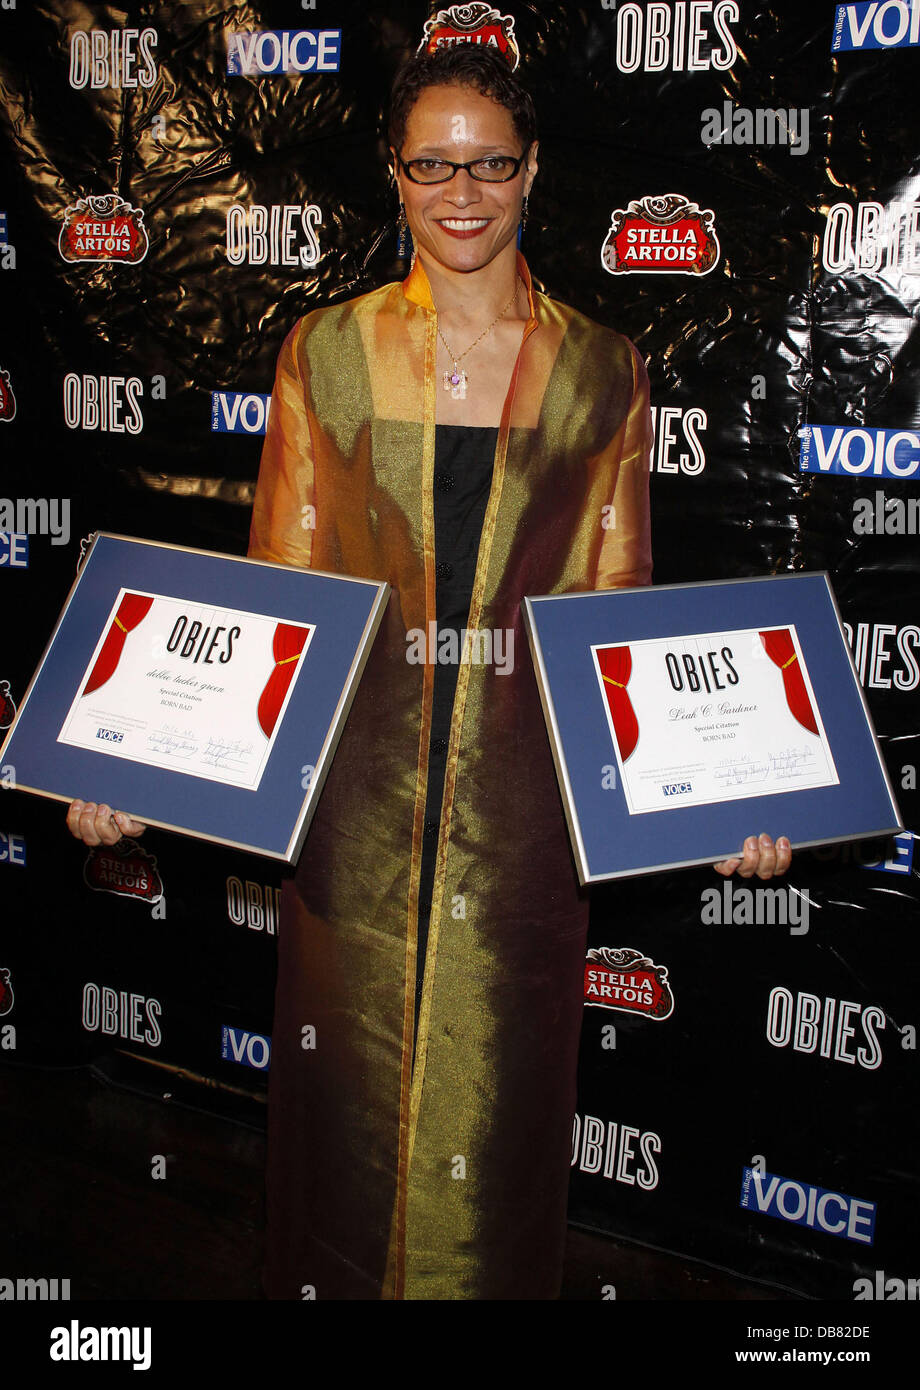 Leah C. Gardiner statt der 56. "Village Voice" Obie Awards Zeremonie in der Webster Hall - Presse Raum New York City, USA - 16.05.11 Stockfoto